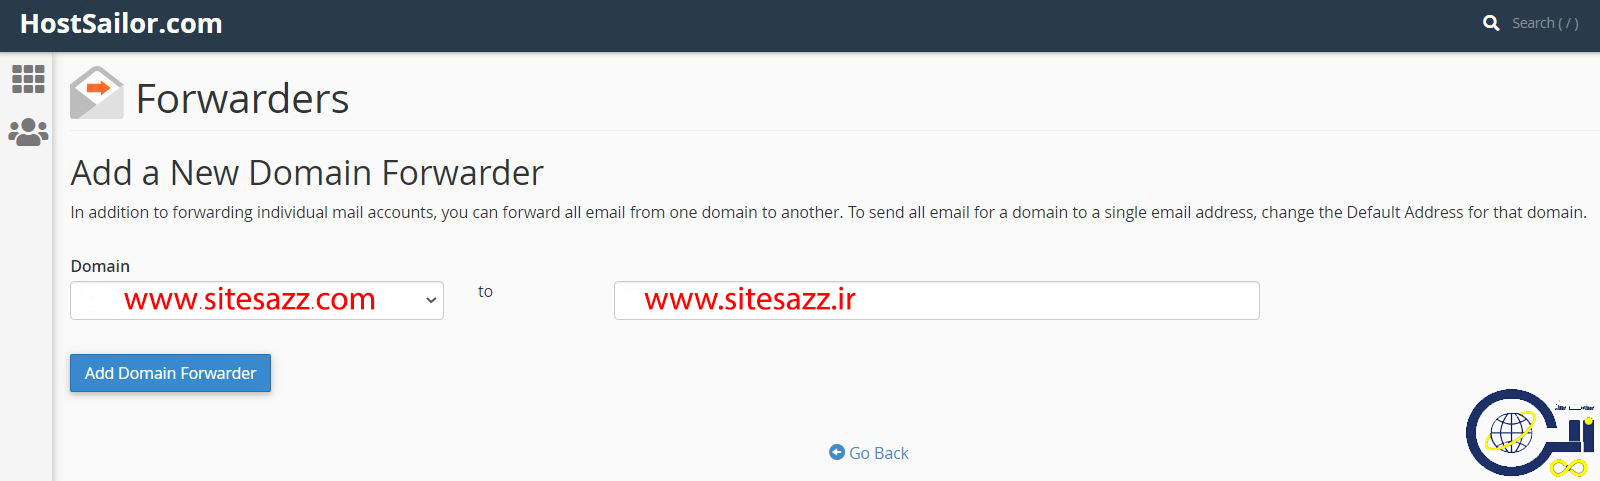 add new domain forwarder